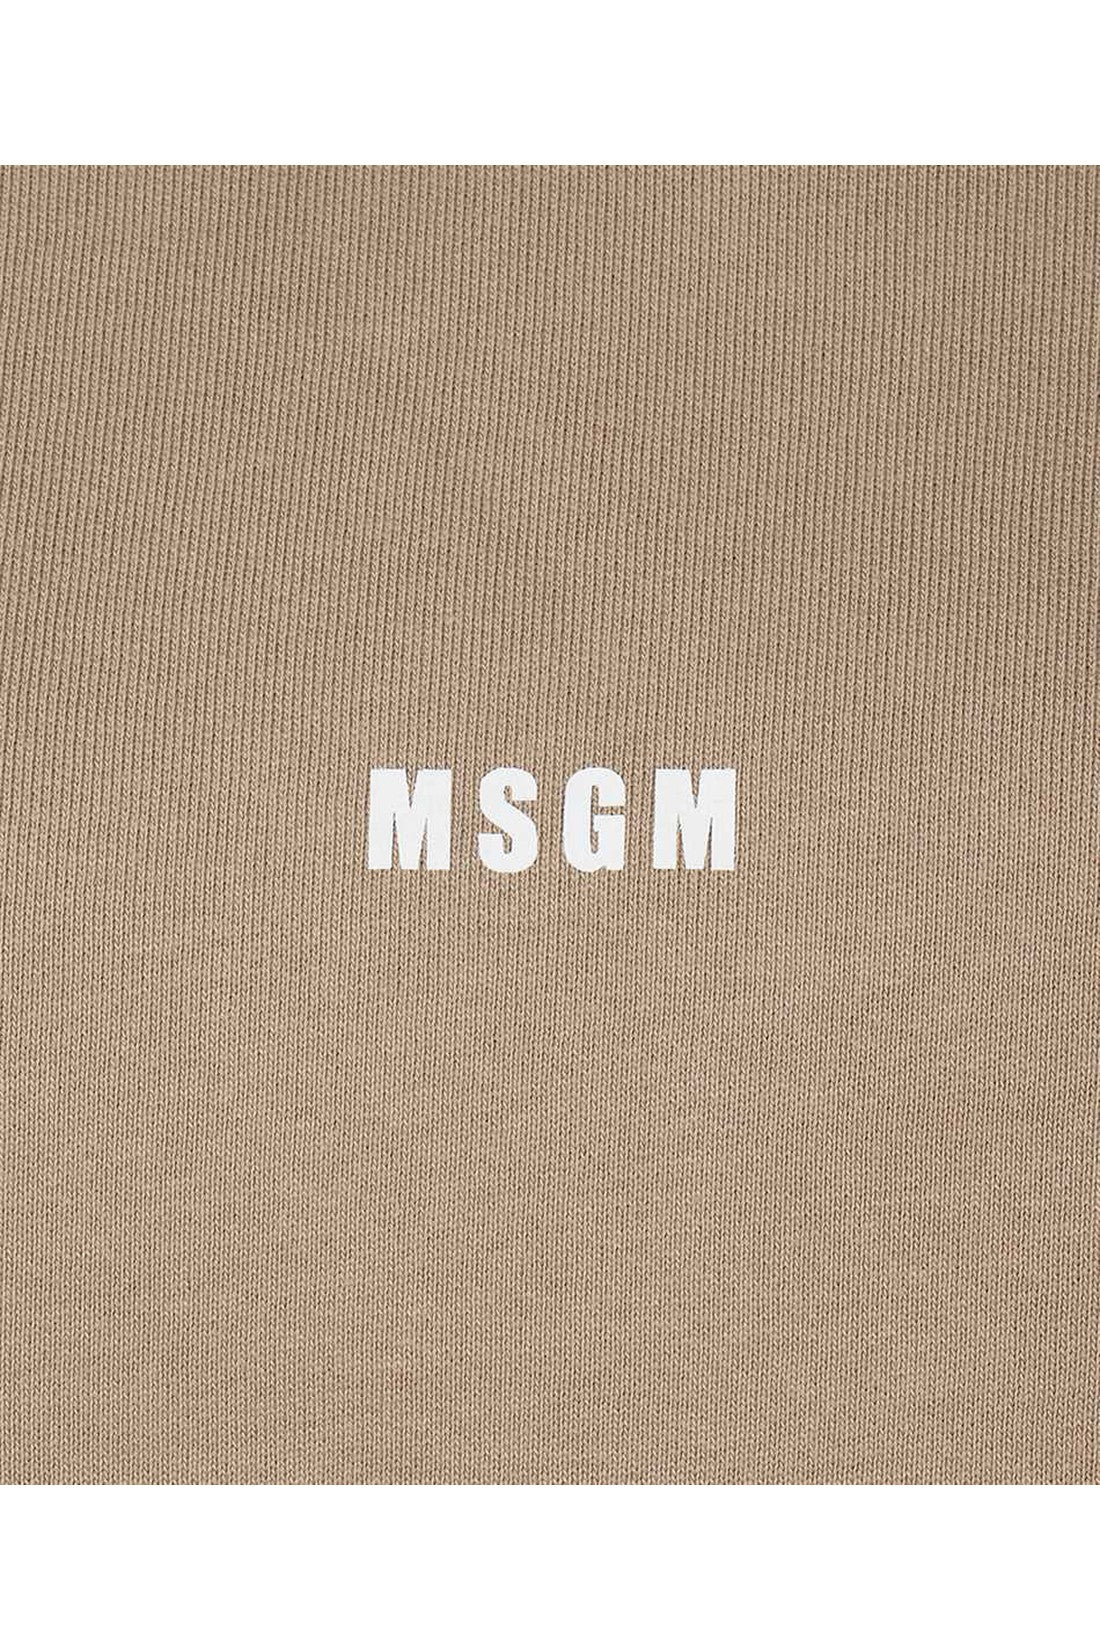 Cotton hoodie-MSGM-OUTLET-SALE-ARCHIVIST